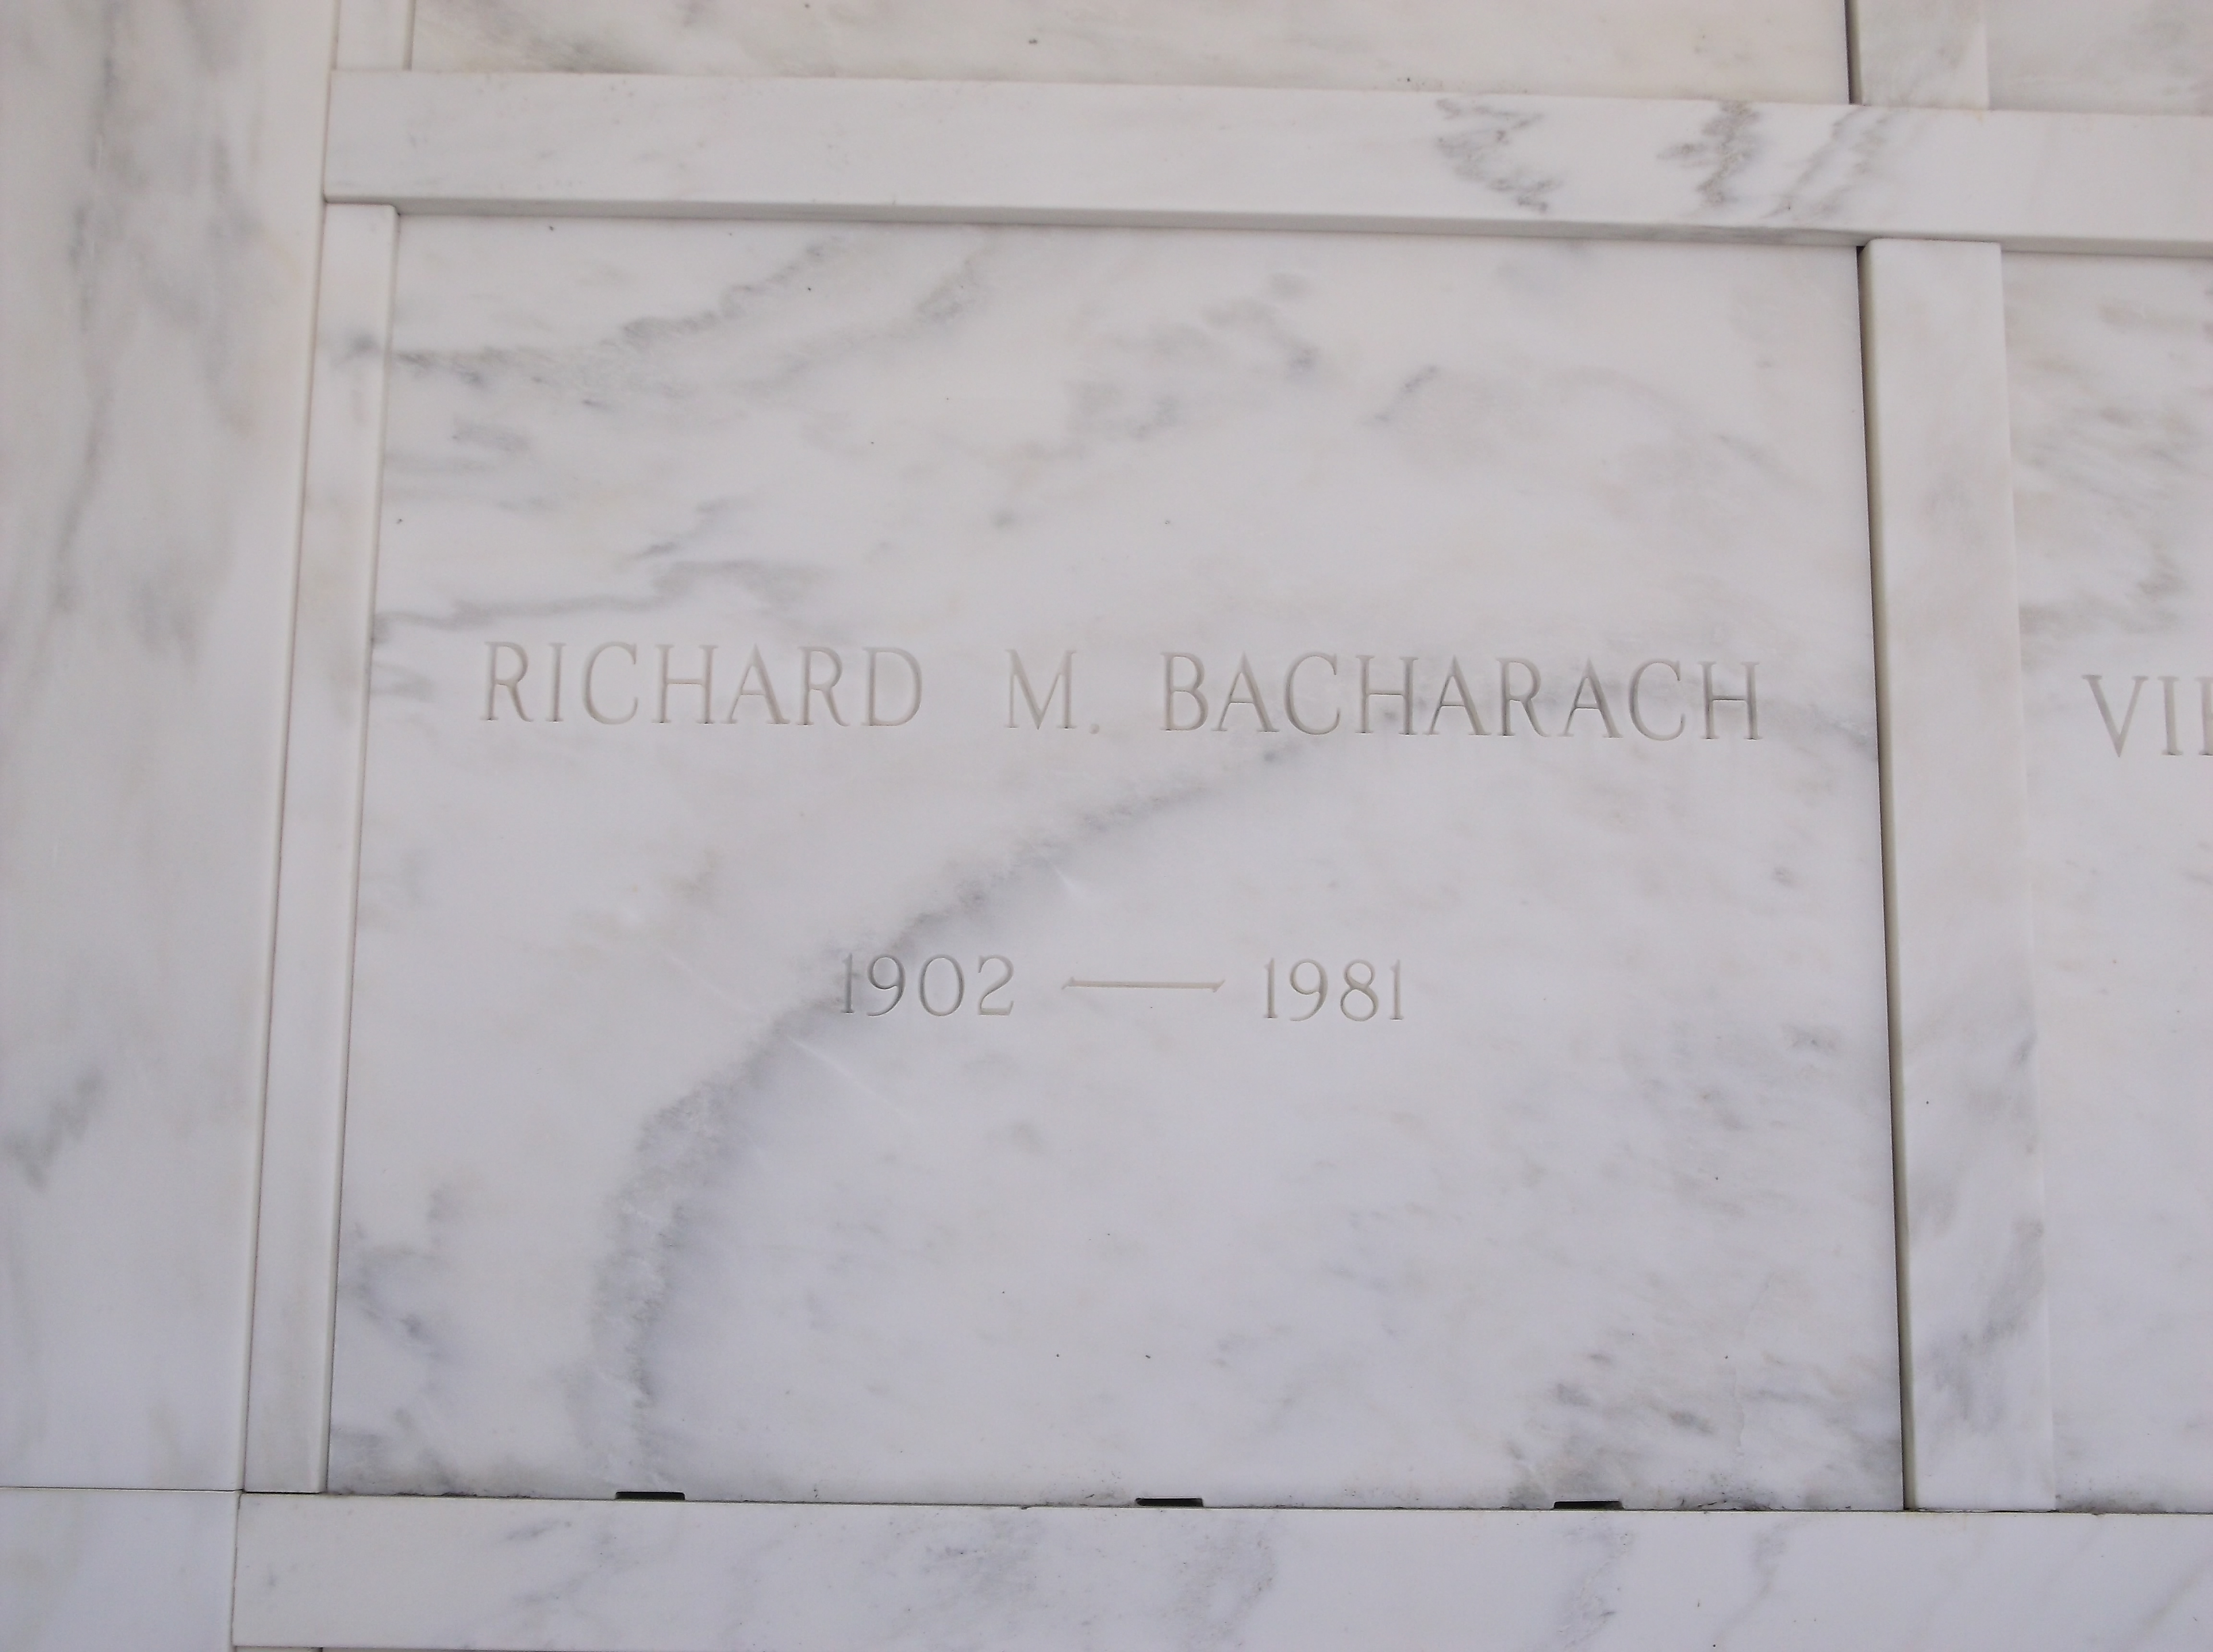 Richard M Bacharach